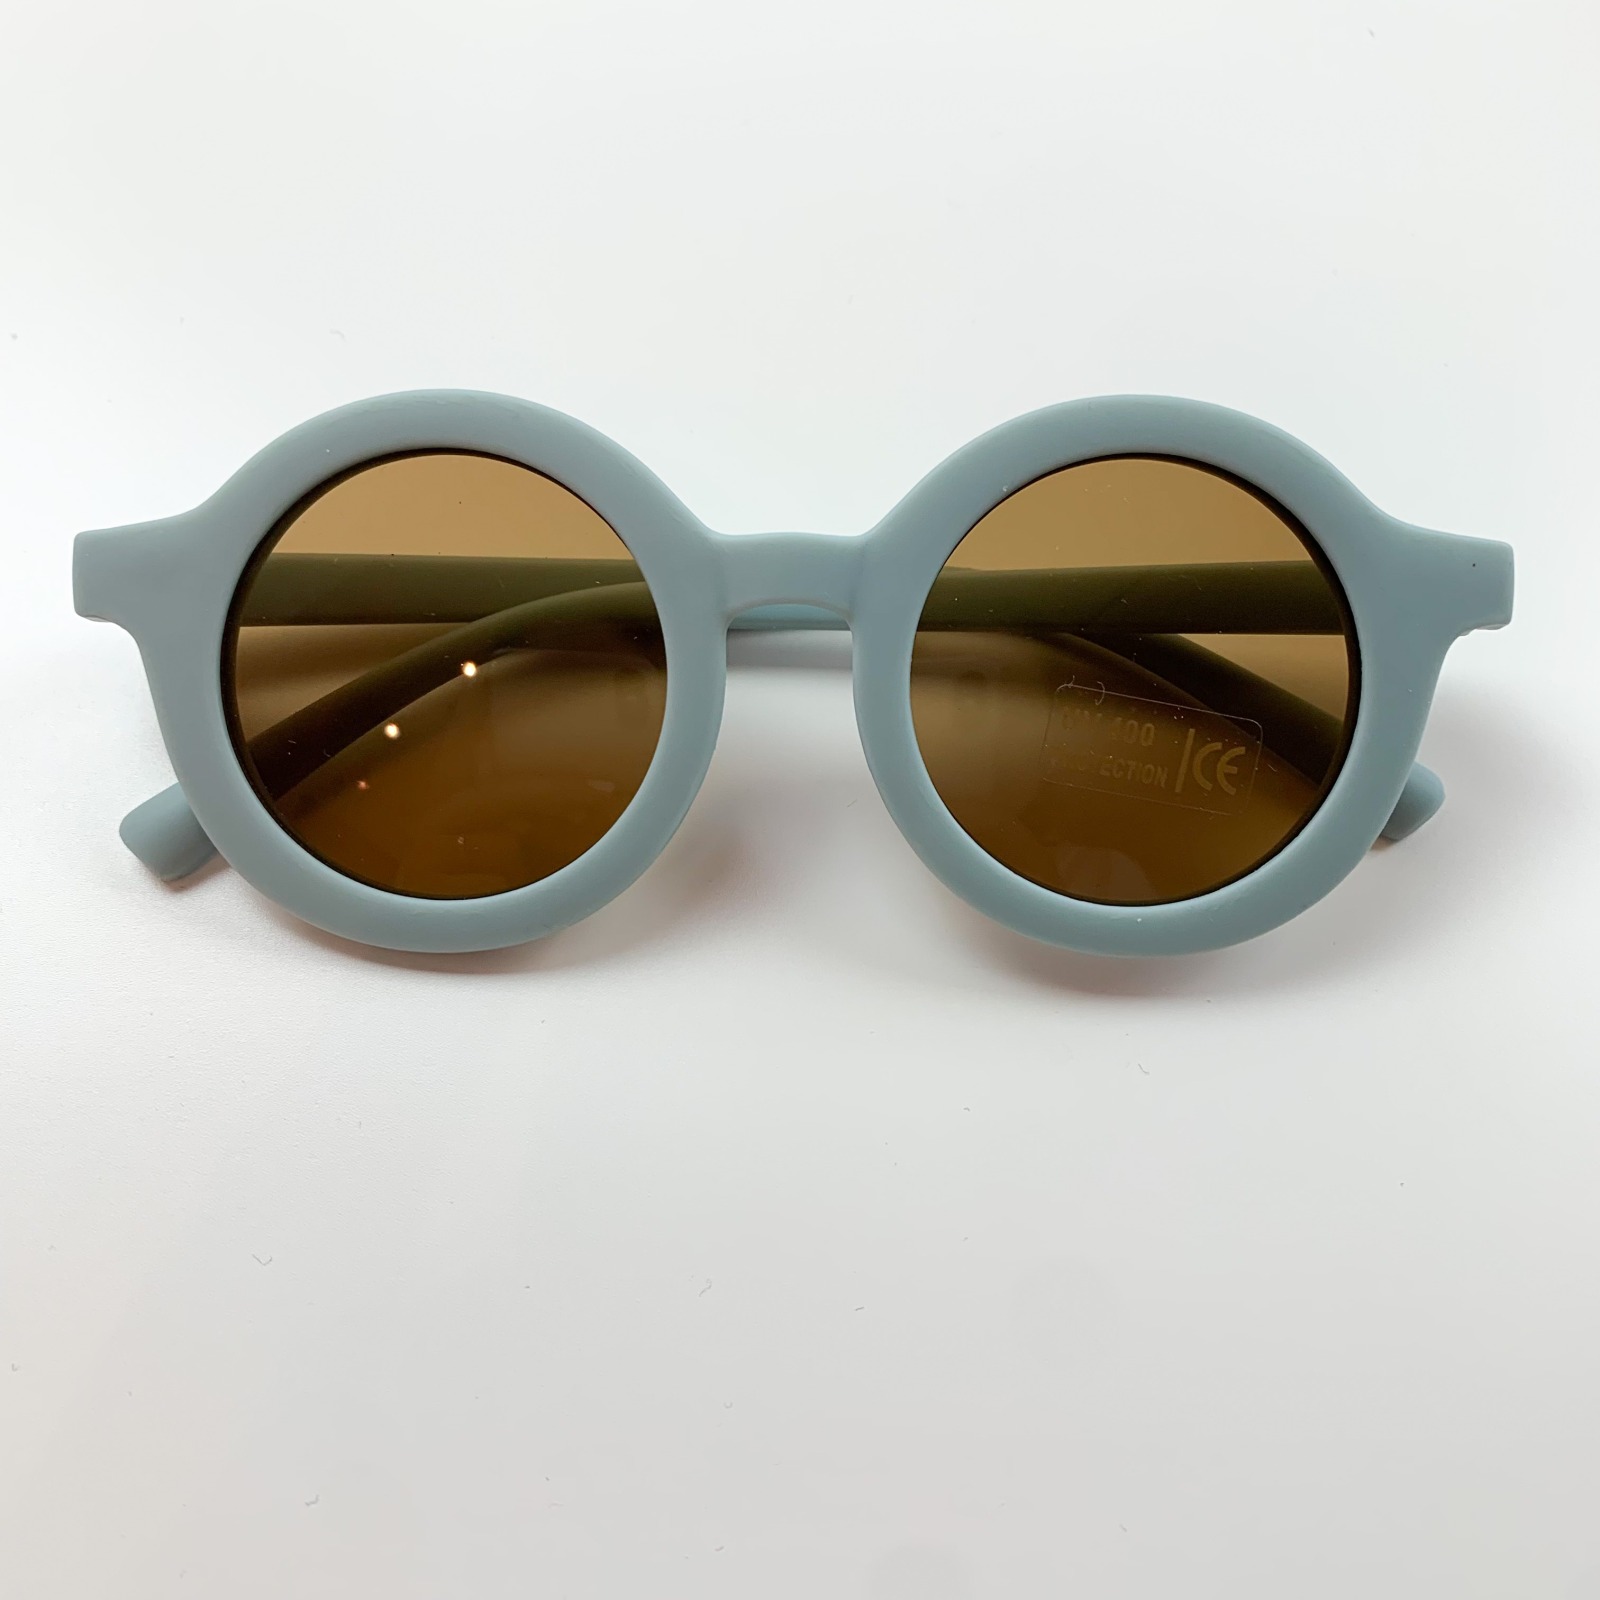 Sonnenbrille - Blau